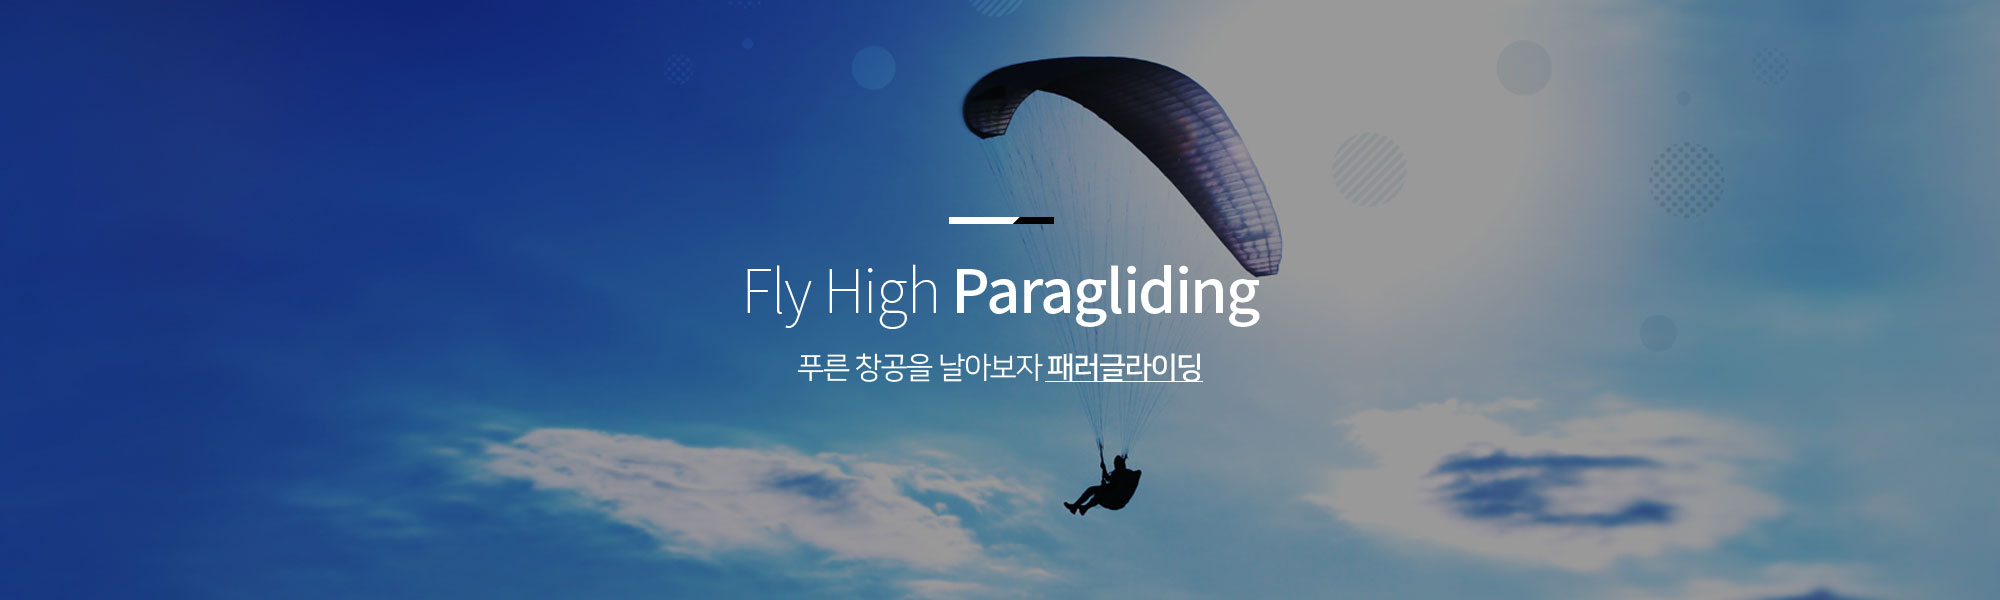 Fly High Paragliding 푸른 창공을 날아보자 패러글라이딩